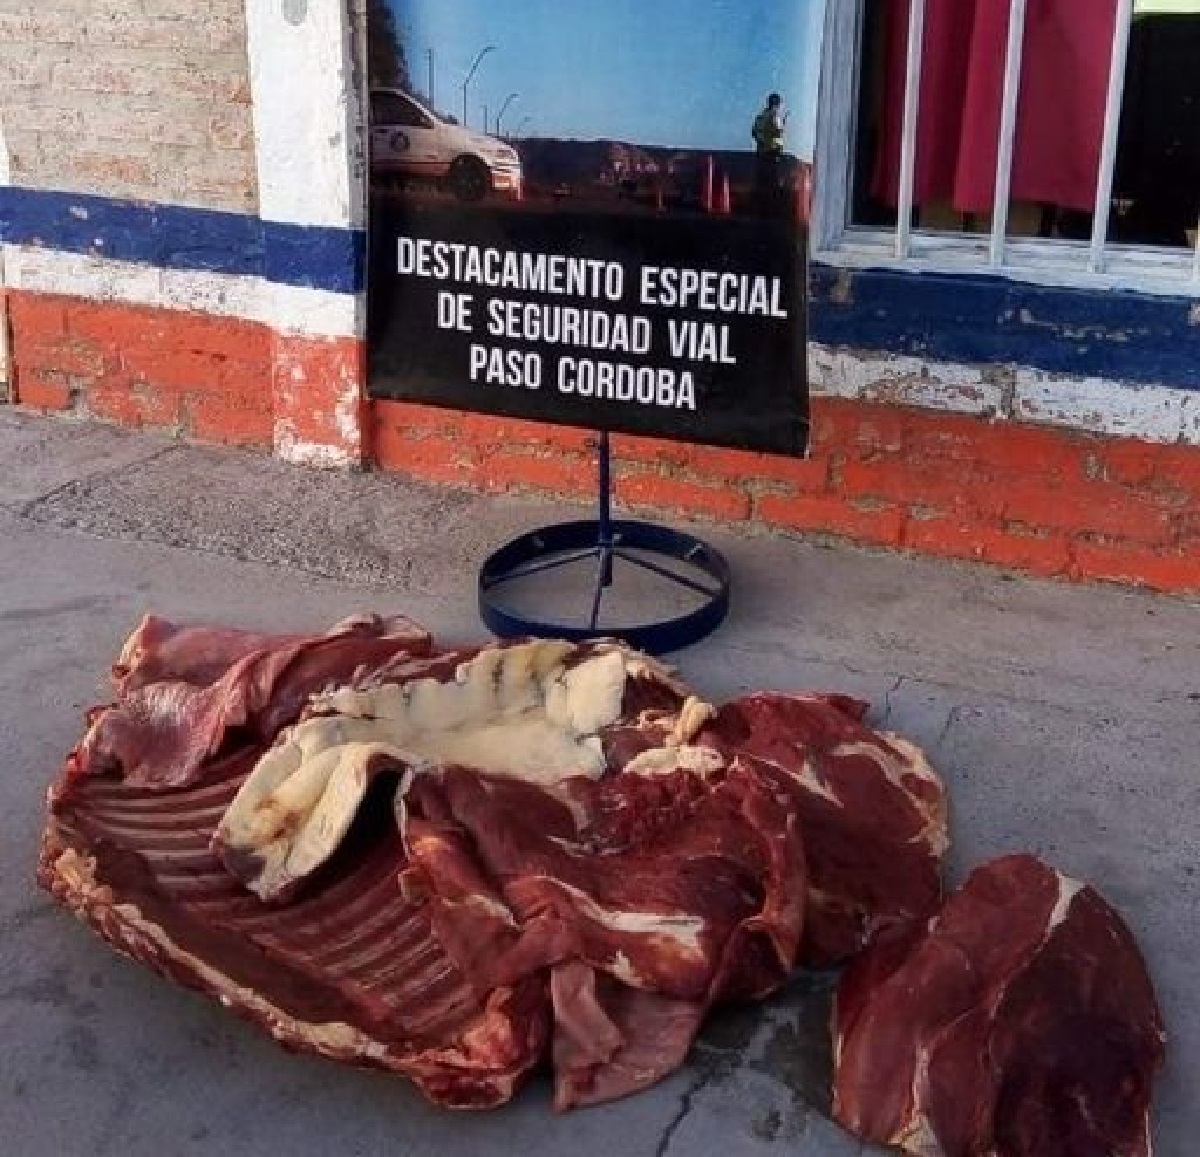 La carne era transportada en bolsas de arpillera en la parte trasera de una camioneta. (Foto gentileza)